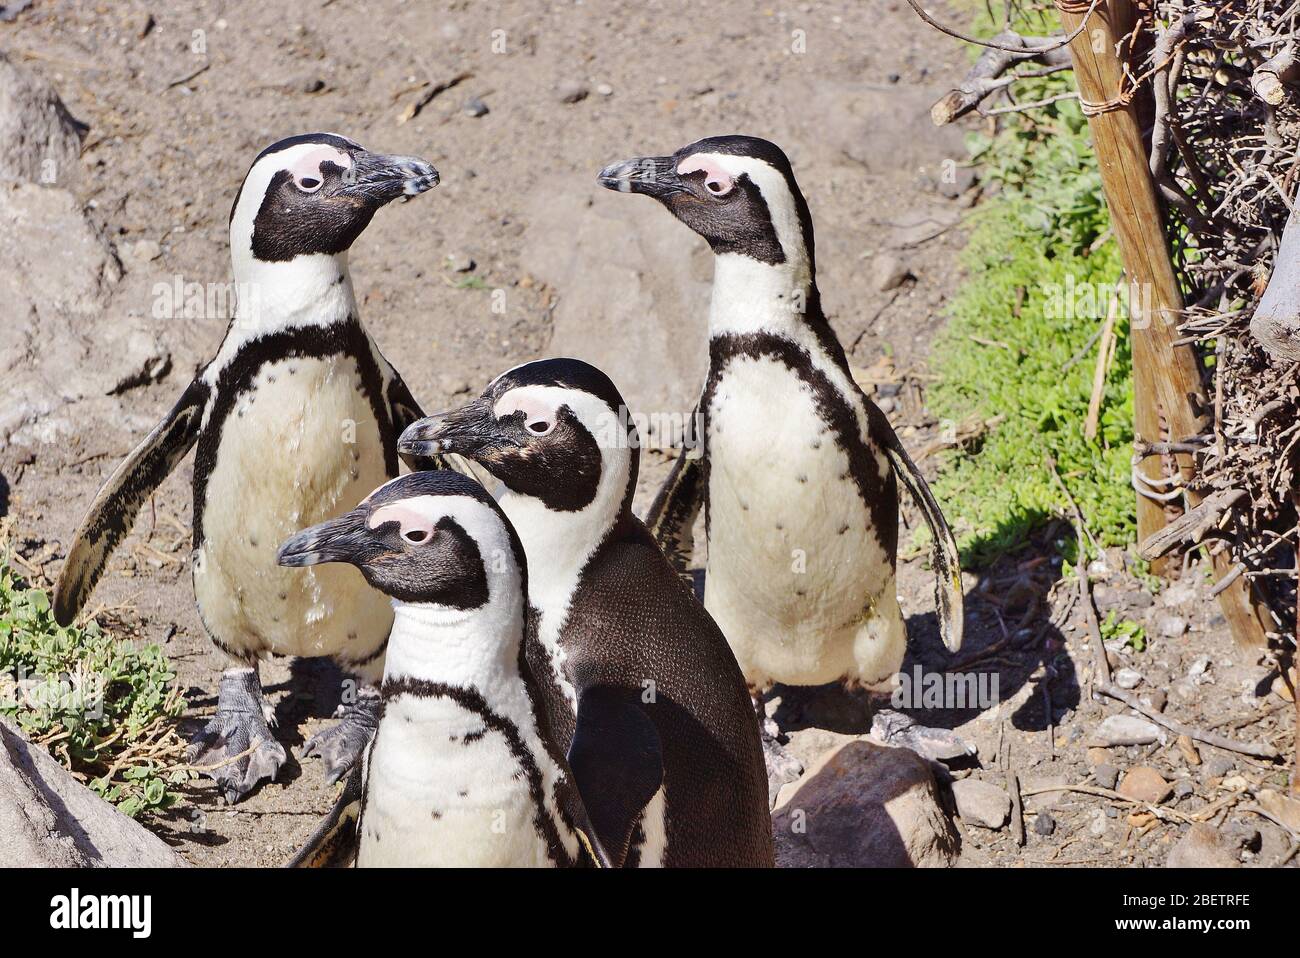 Curiuos Groupe de Penguins à Betty’s Bay en Afrique du Sud. Drôle de science comme tous les regardent sur le côté et deux face l'un à l'autre. Banque D'Images